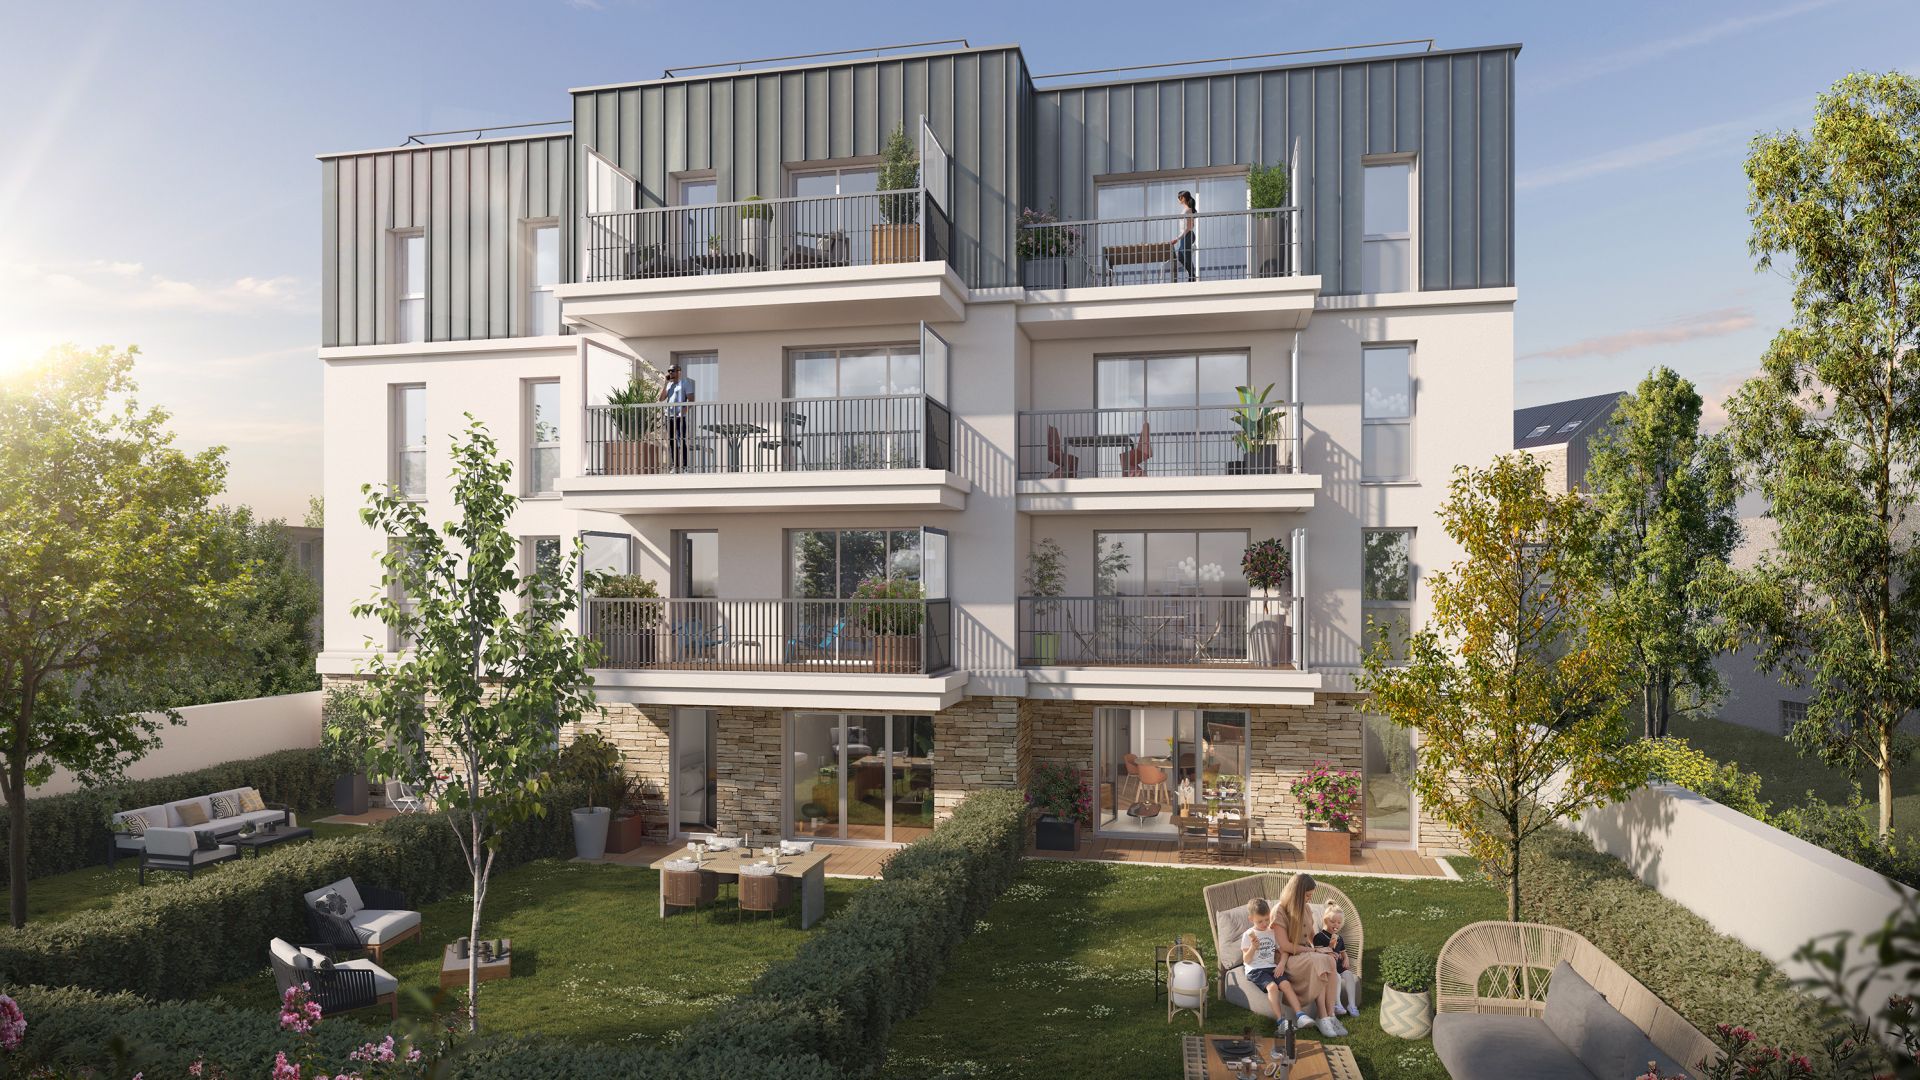 Greencity immobilier - achat appartements neufs du T1 au T4 - Résidence Opportunity - 64430 Chennevières-sur-Marne - vue jardin